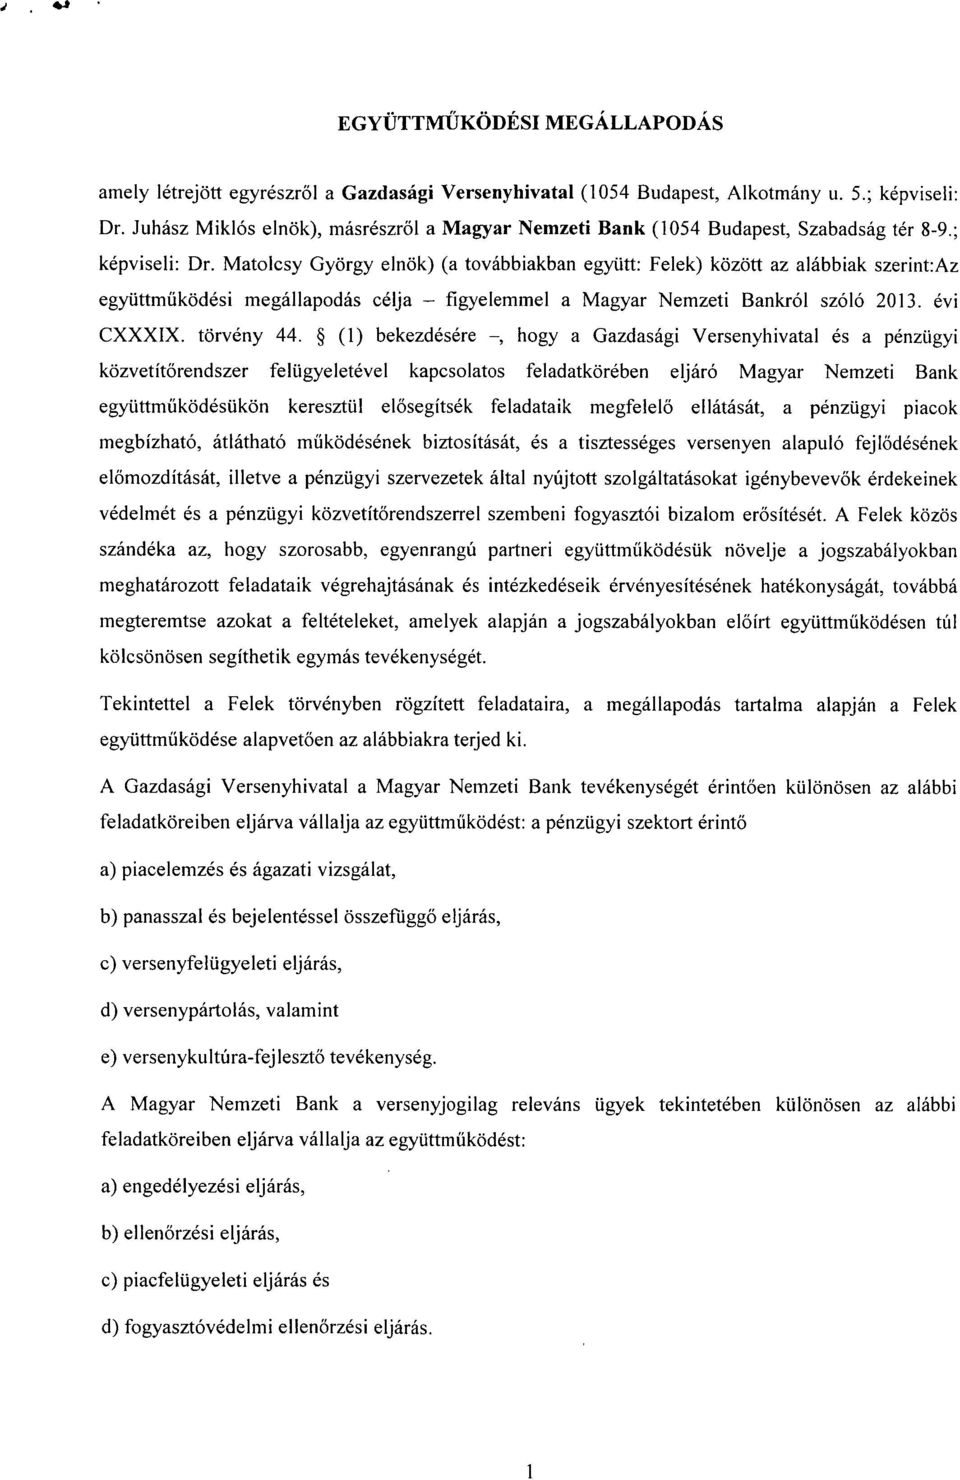 Matolcsy György elnök) (a továbbiakban együtt: Felek) között az alábbiak szerint:az együttműködési megállapodás célja - figyelemmel a Magyar Nemzeti Bankról szóló 2013. évi CXXXIX. törvény 44.